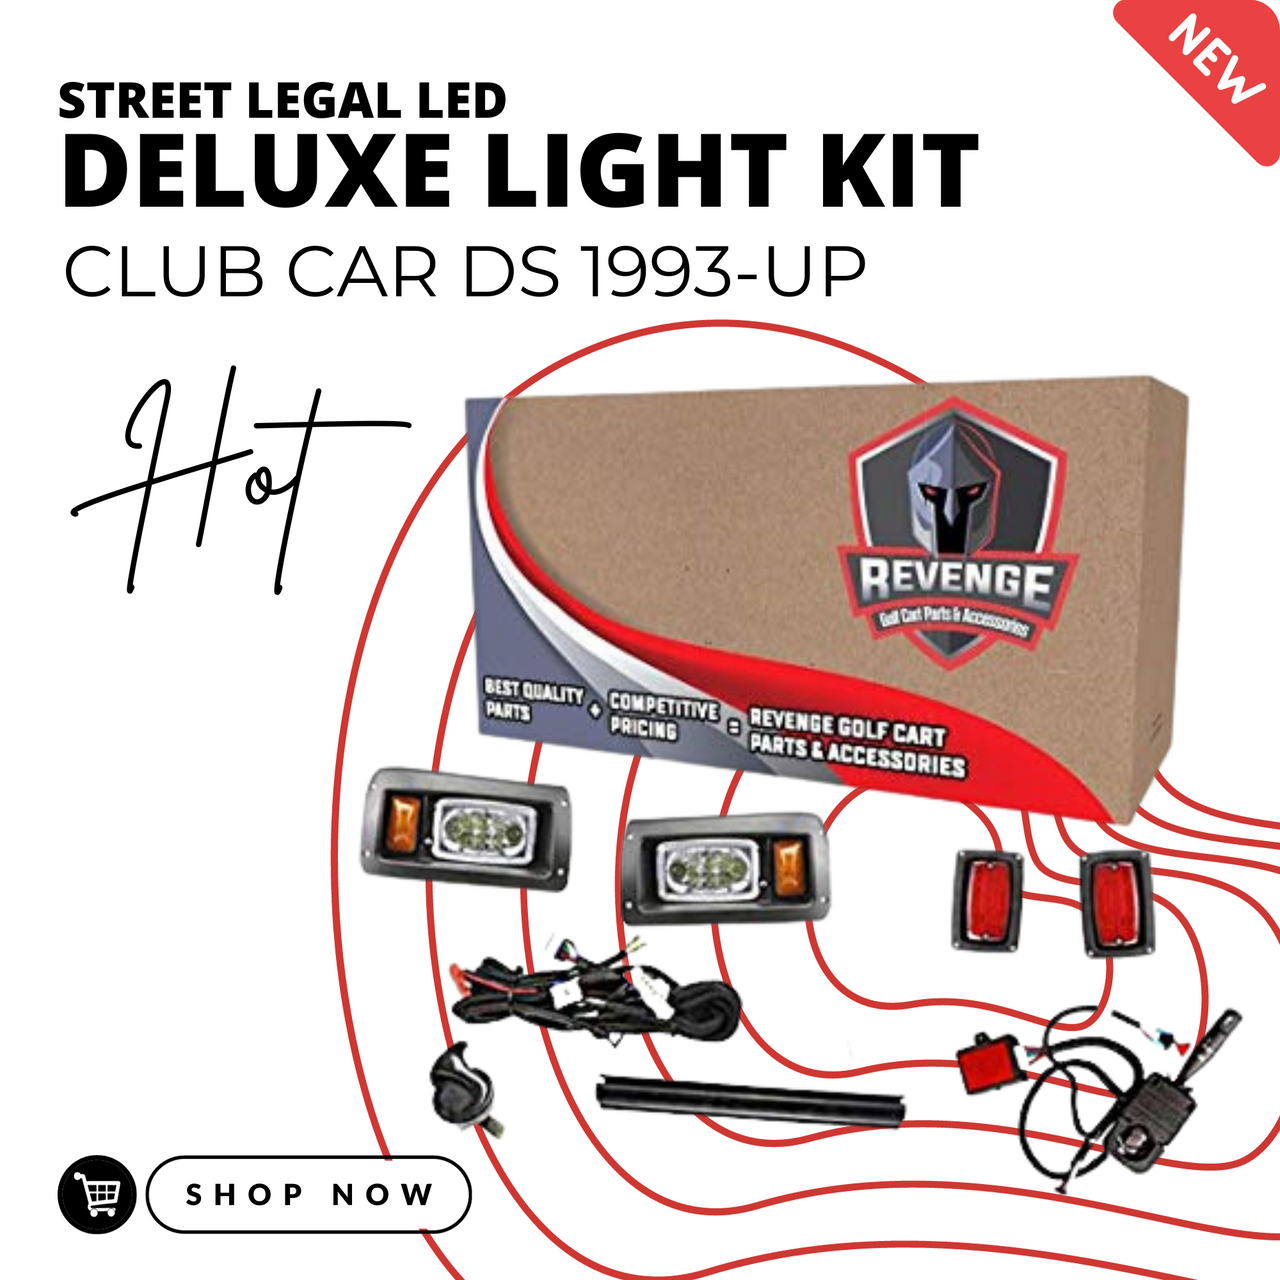 Revenge Club Car DS LED Super Deluxe Street Legal Golf Cart Light Kit 1993 & Up, LIGHT-L1001KLDSKO-D1-X1